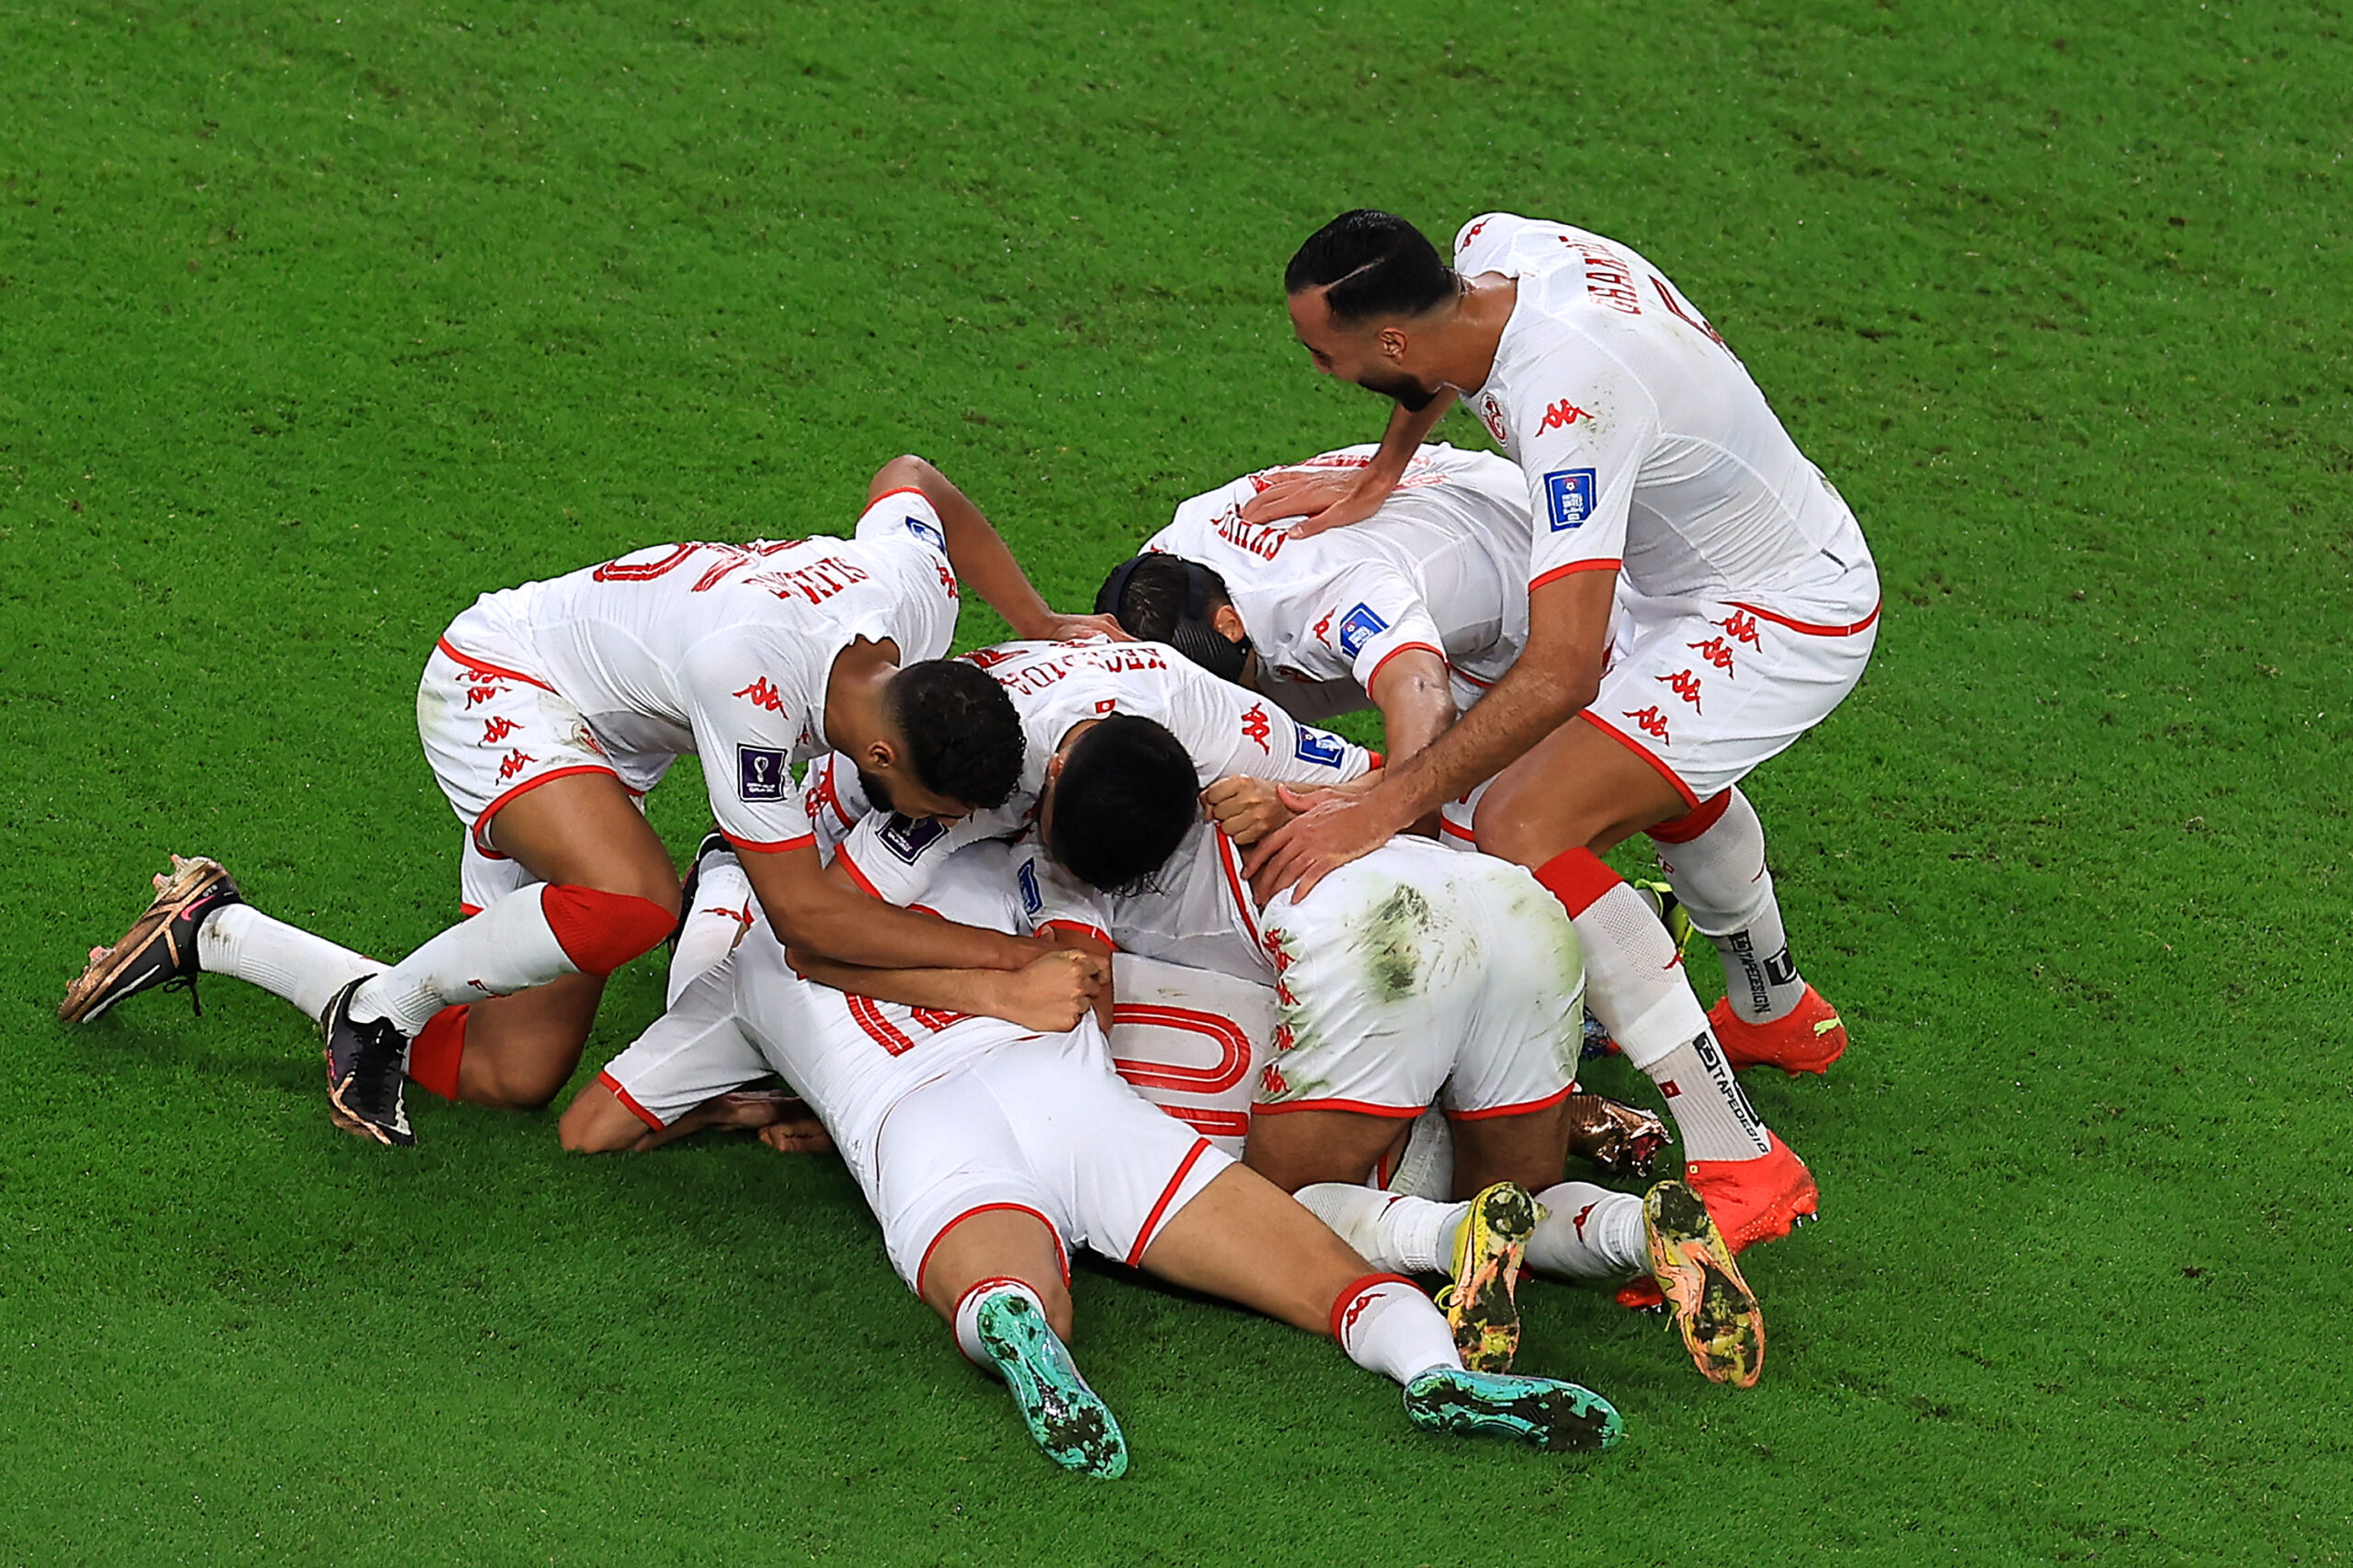 Tunisia 1 - 0 France